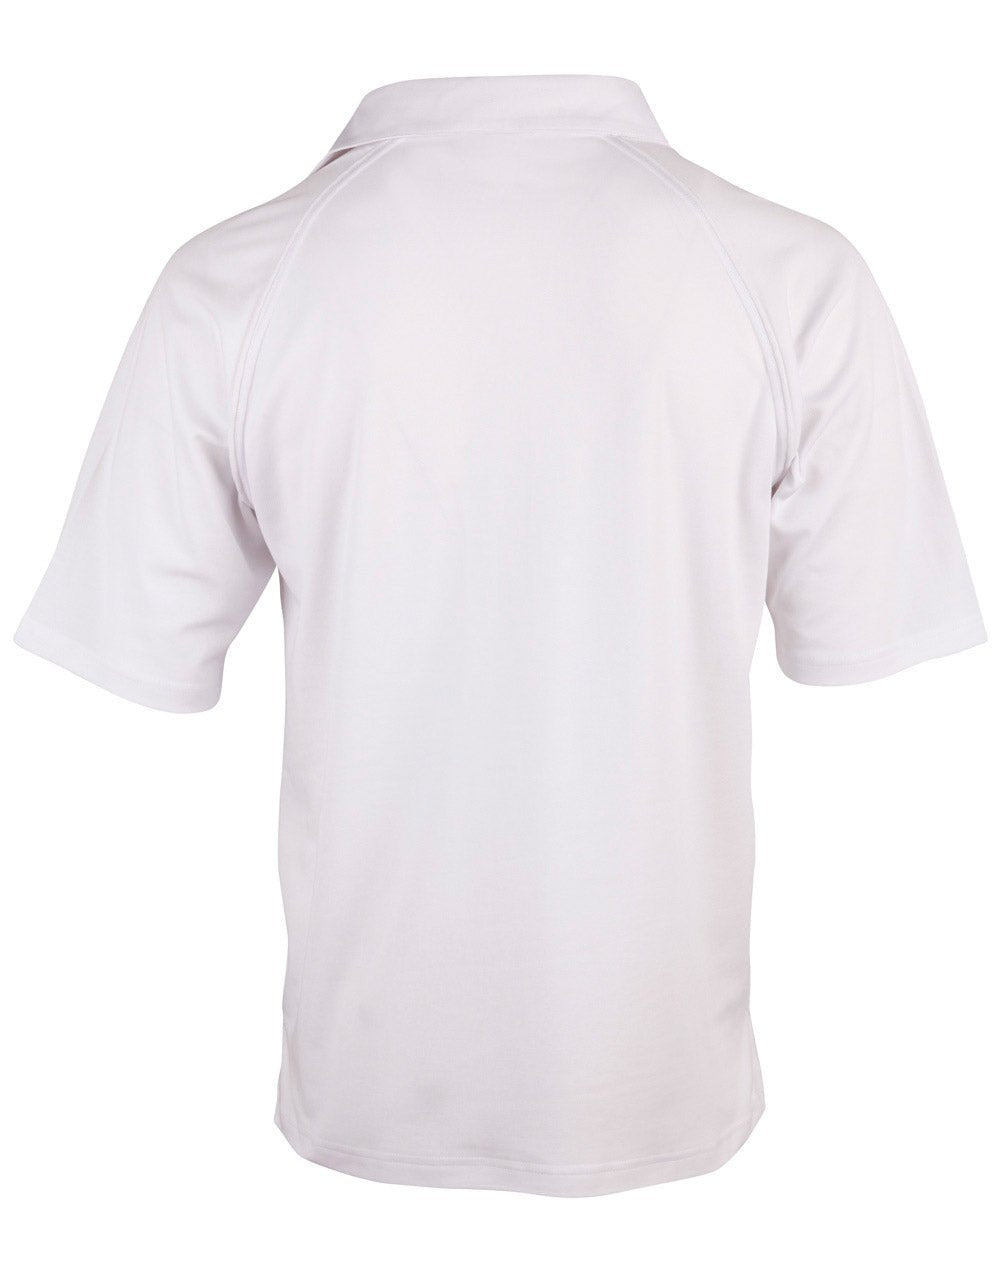 PS29 CRICKET POLO Short Sleeve Men's - Icon Tshirts